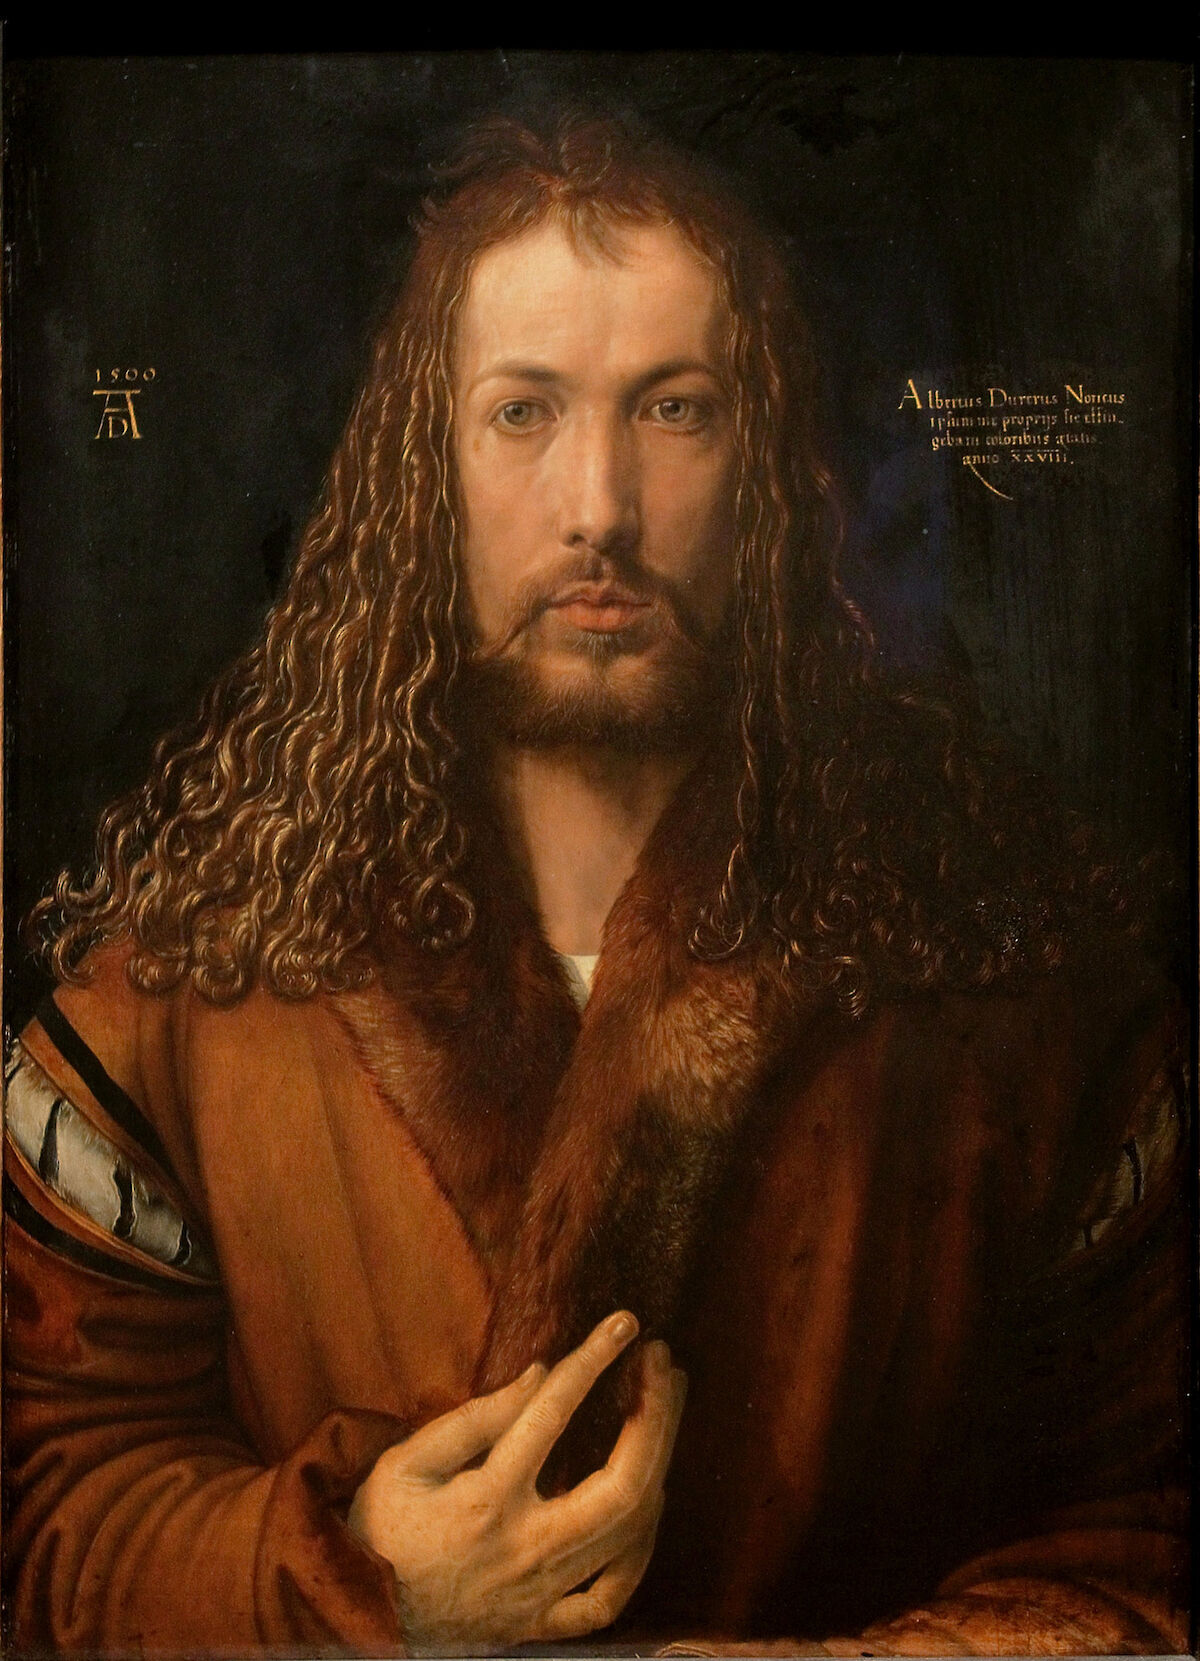 albrecht-durer-self-portrait-at-age-28-1500-trivium-art-history.1200x0.jpg